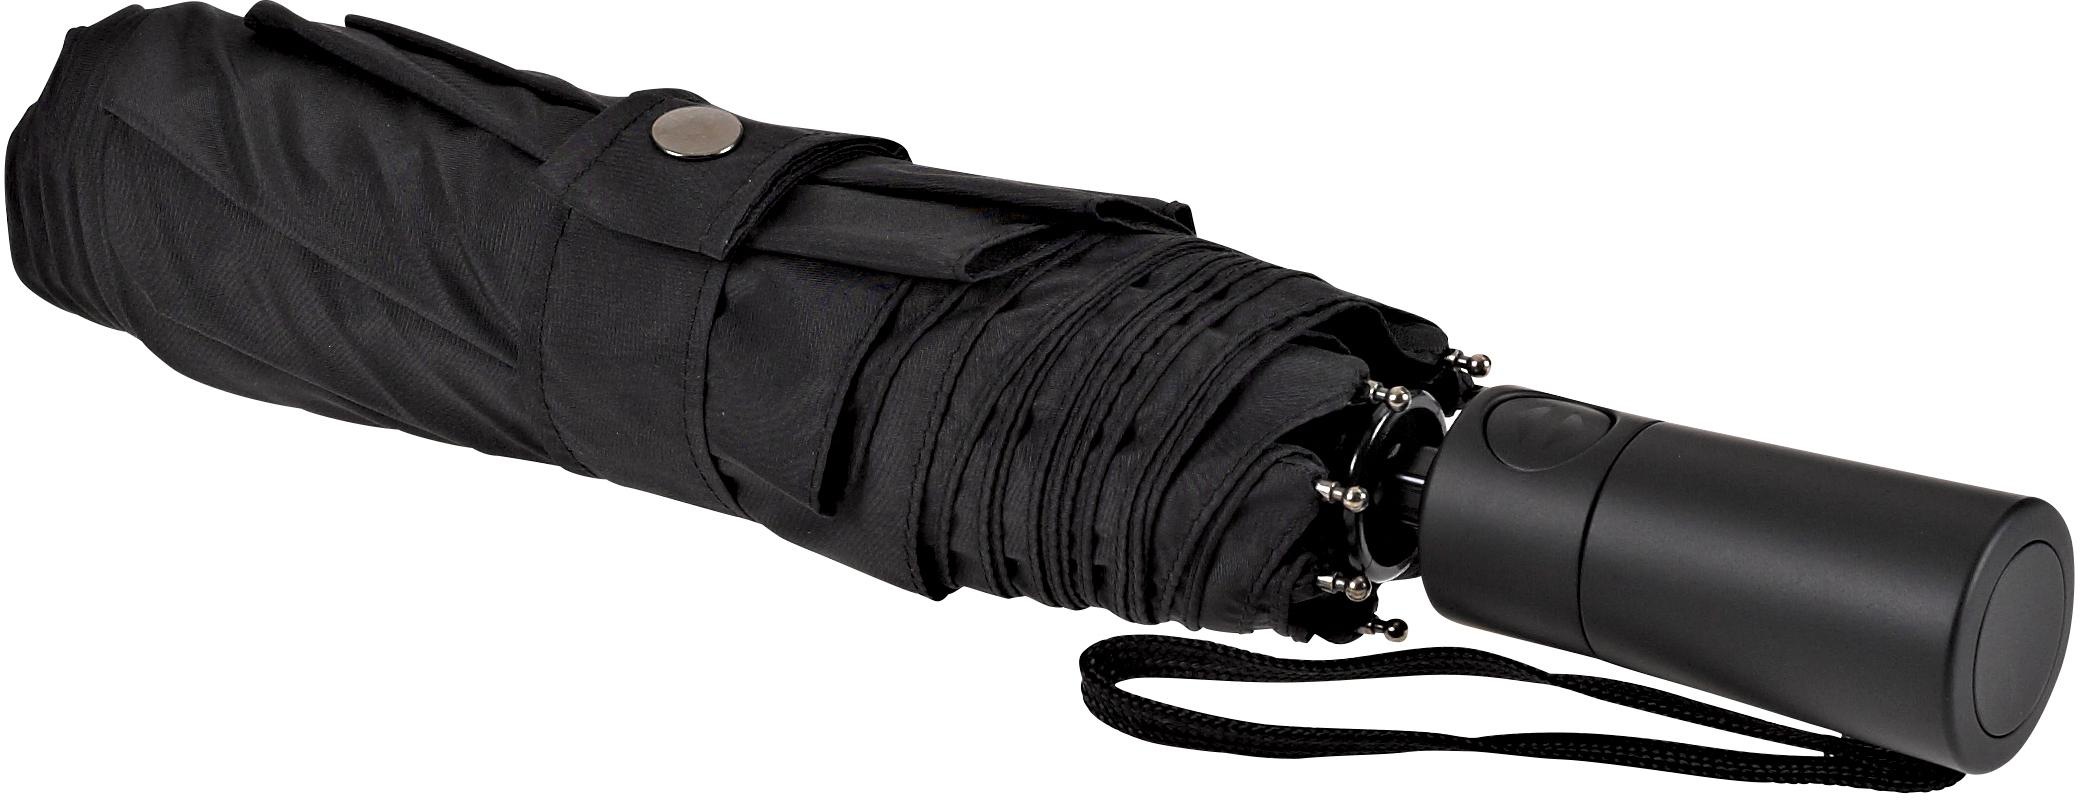 Taschenregenschirm »Automatik 3020, schwarz« | BAUR EuroSCHIRM® kaufen